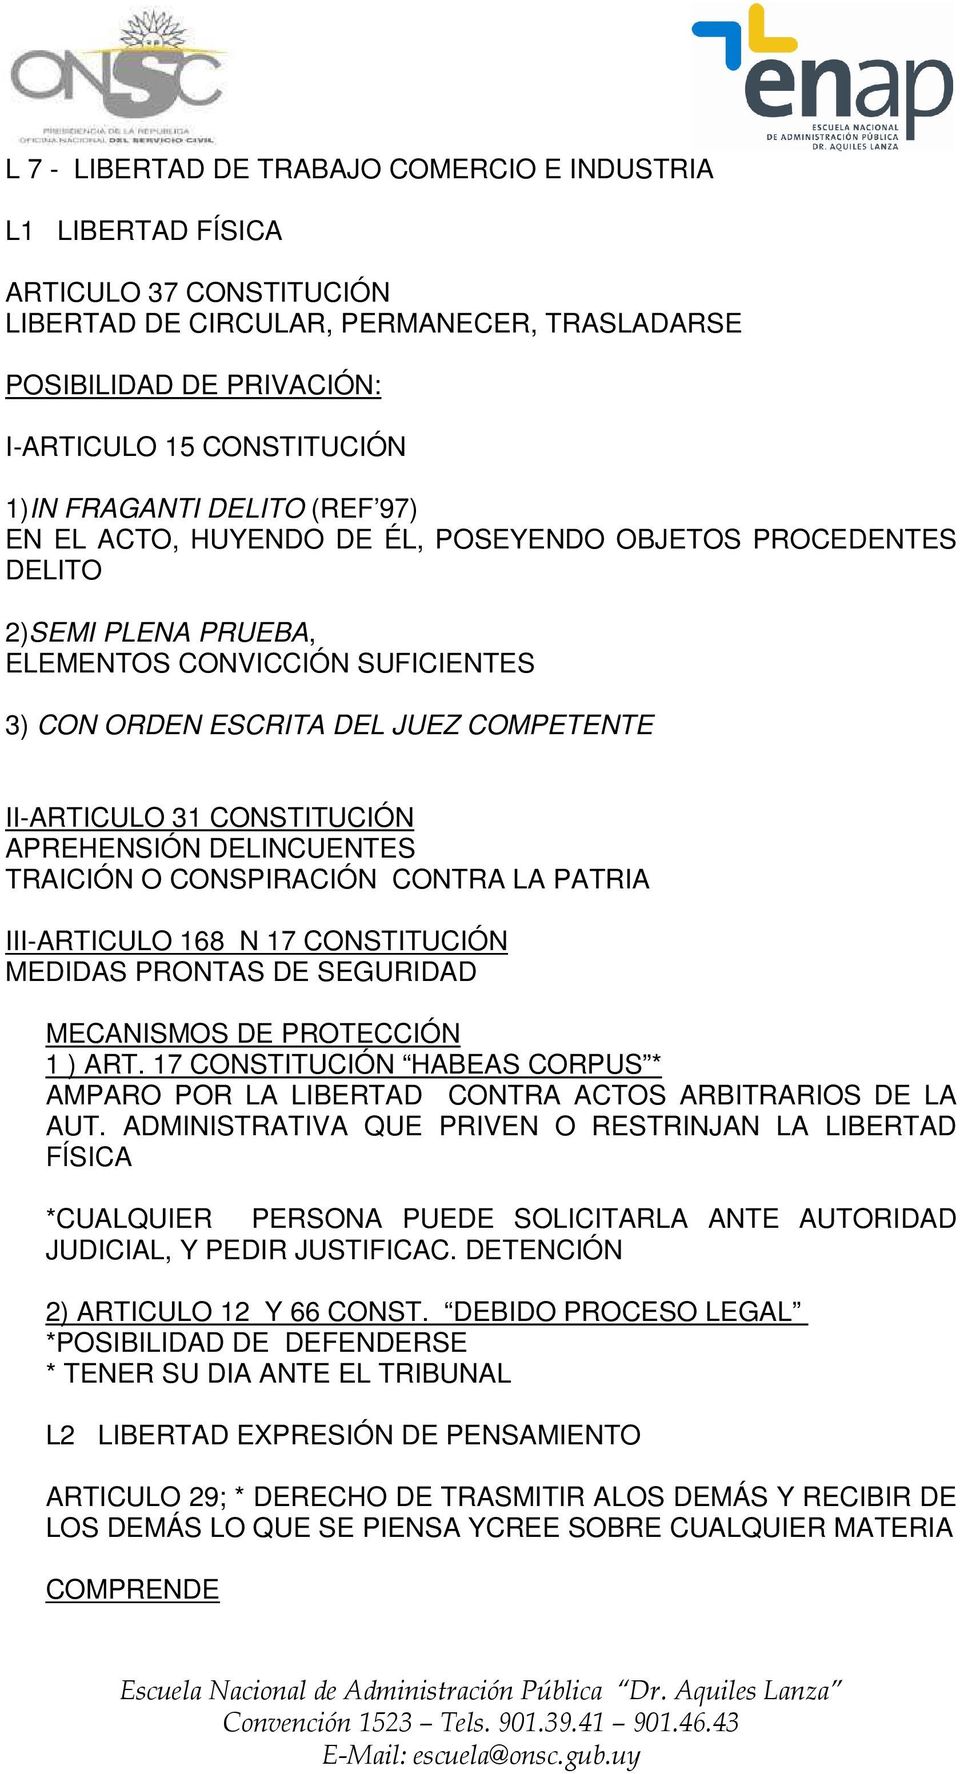 CONSTITUCIÓN APREHENSIÓN DELINCUENTES TRAICIÓN O CONSPIRACIÓN CONTRA LA PATRIA III-ARTICULO 168 N 17 CONSTITUCIÓN MEDIDAS PRONTAS DE SEGURIDAD MECANISMOS DE PROTECCIÓN 1 ) ART.